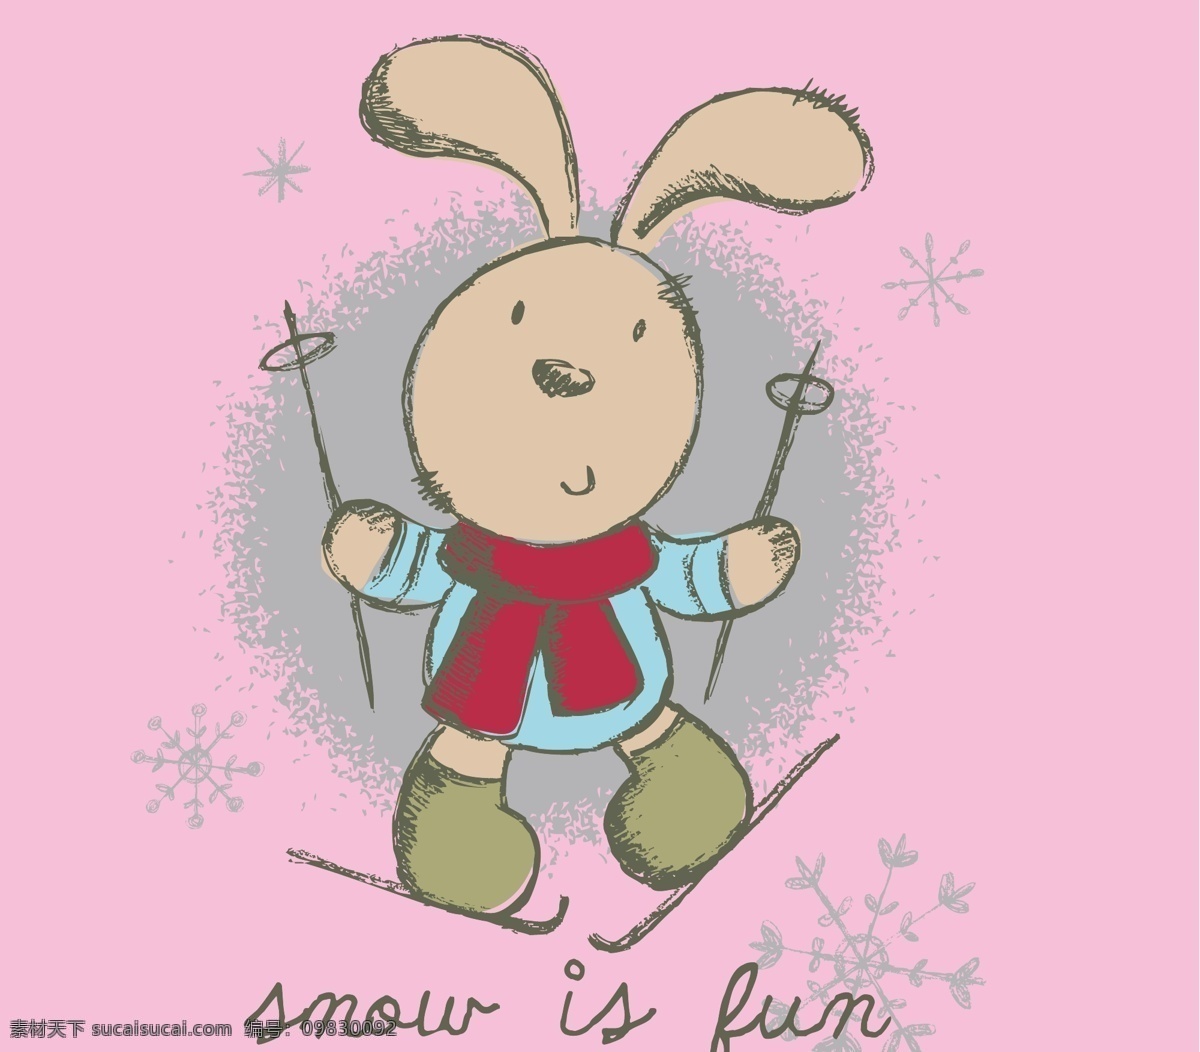 滑雪 兔子 极限运动 卡通设计 卡通图案 卡通形象 可爱兔子 手绘插画 速度 滑雪的兔子 快乐假日 矢量 插画集